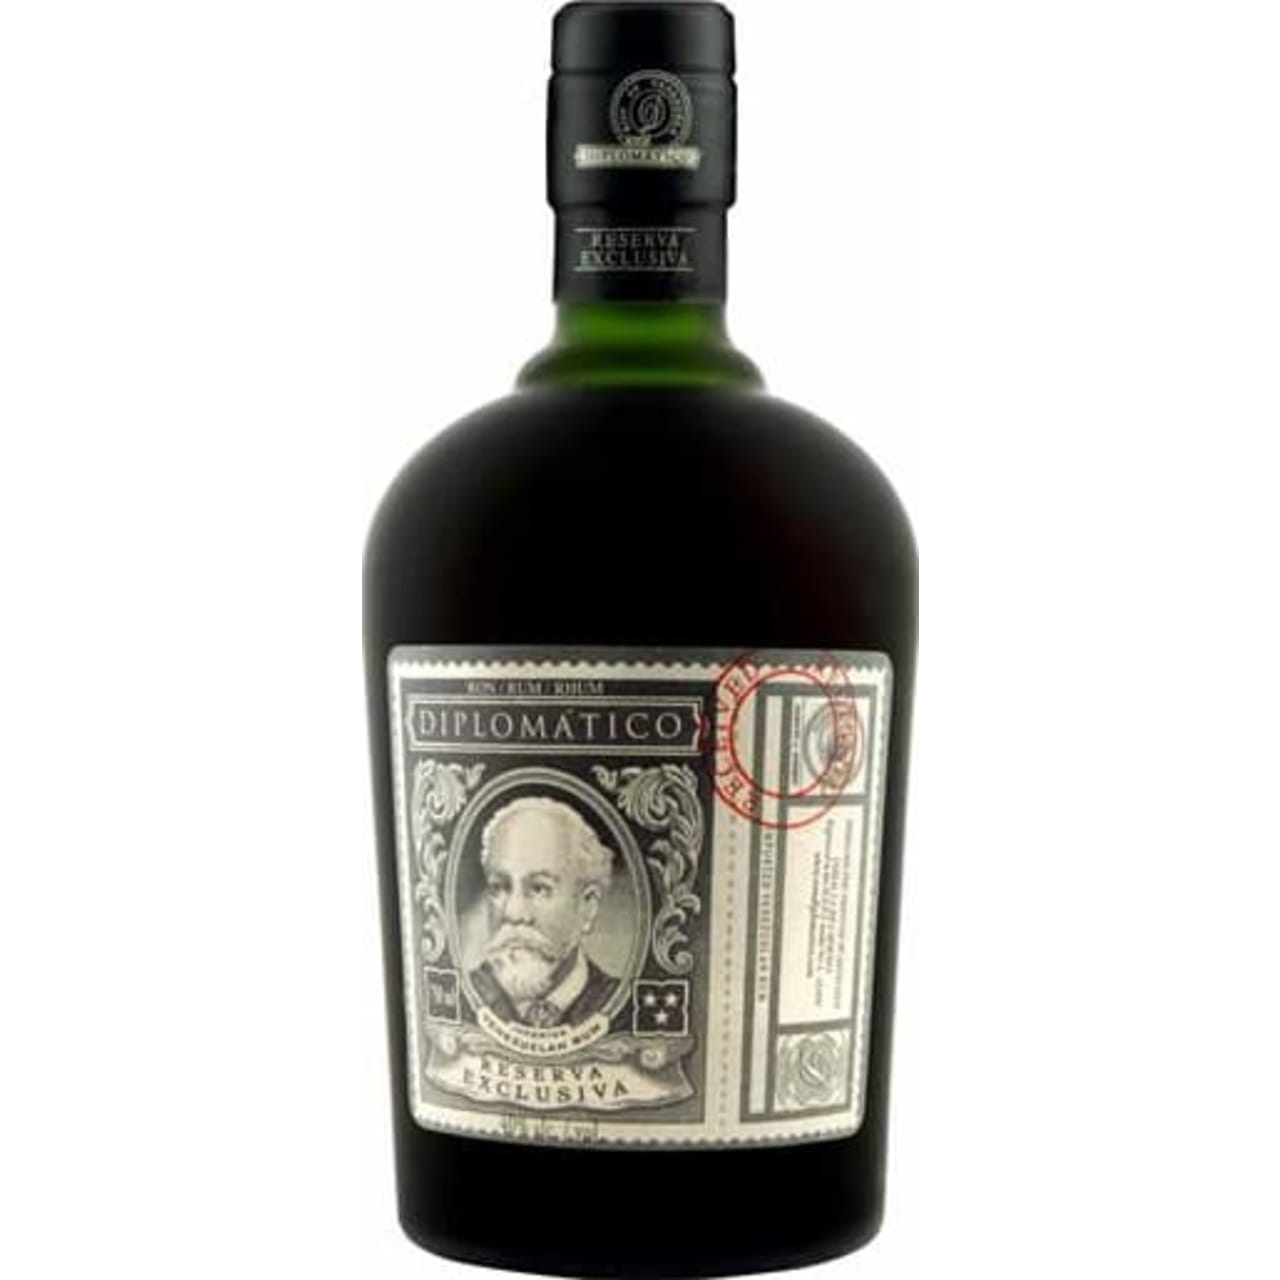 Product Image - Diplomatico Reserva Exclusiva Dark Rum